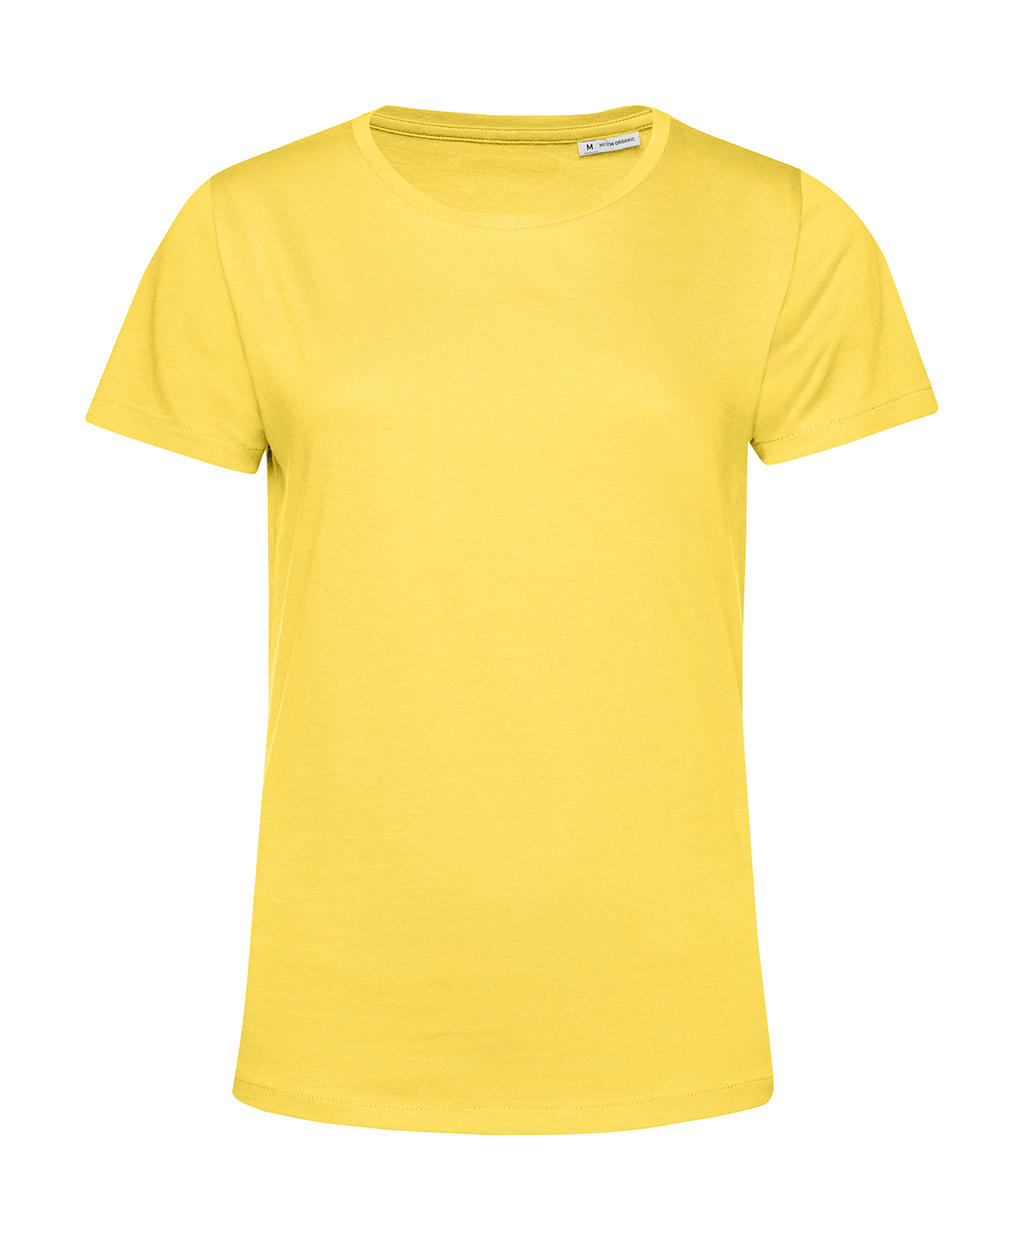 Tričko dámské BC Organic Inspire E150 - žluté, XS